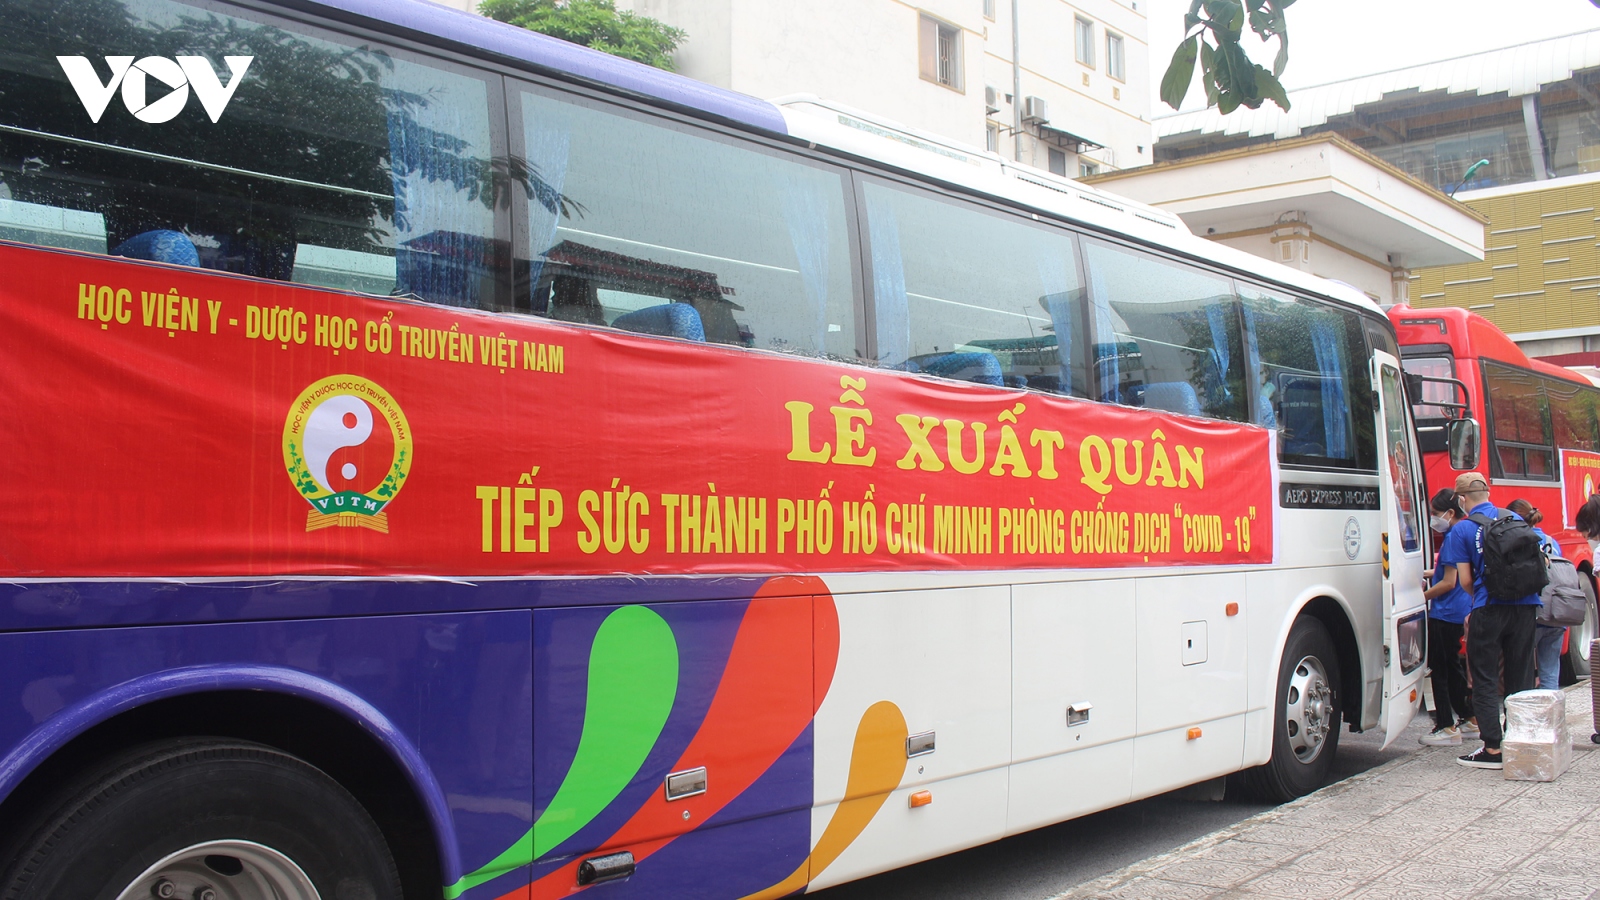 Học viện Y Dược học Cổ truyền Việt Nam lên đường vào hỗ trợ TP.HCM